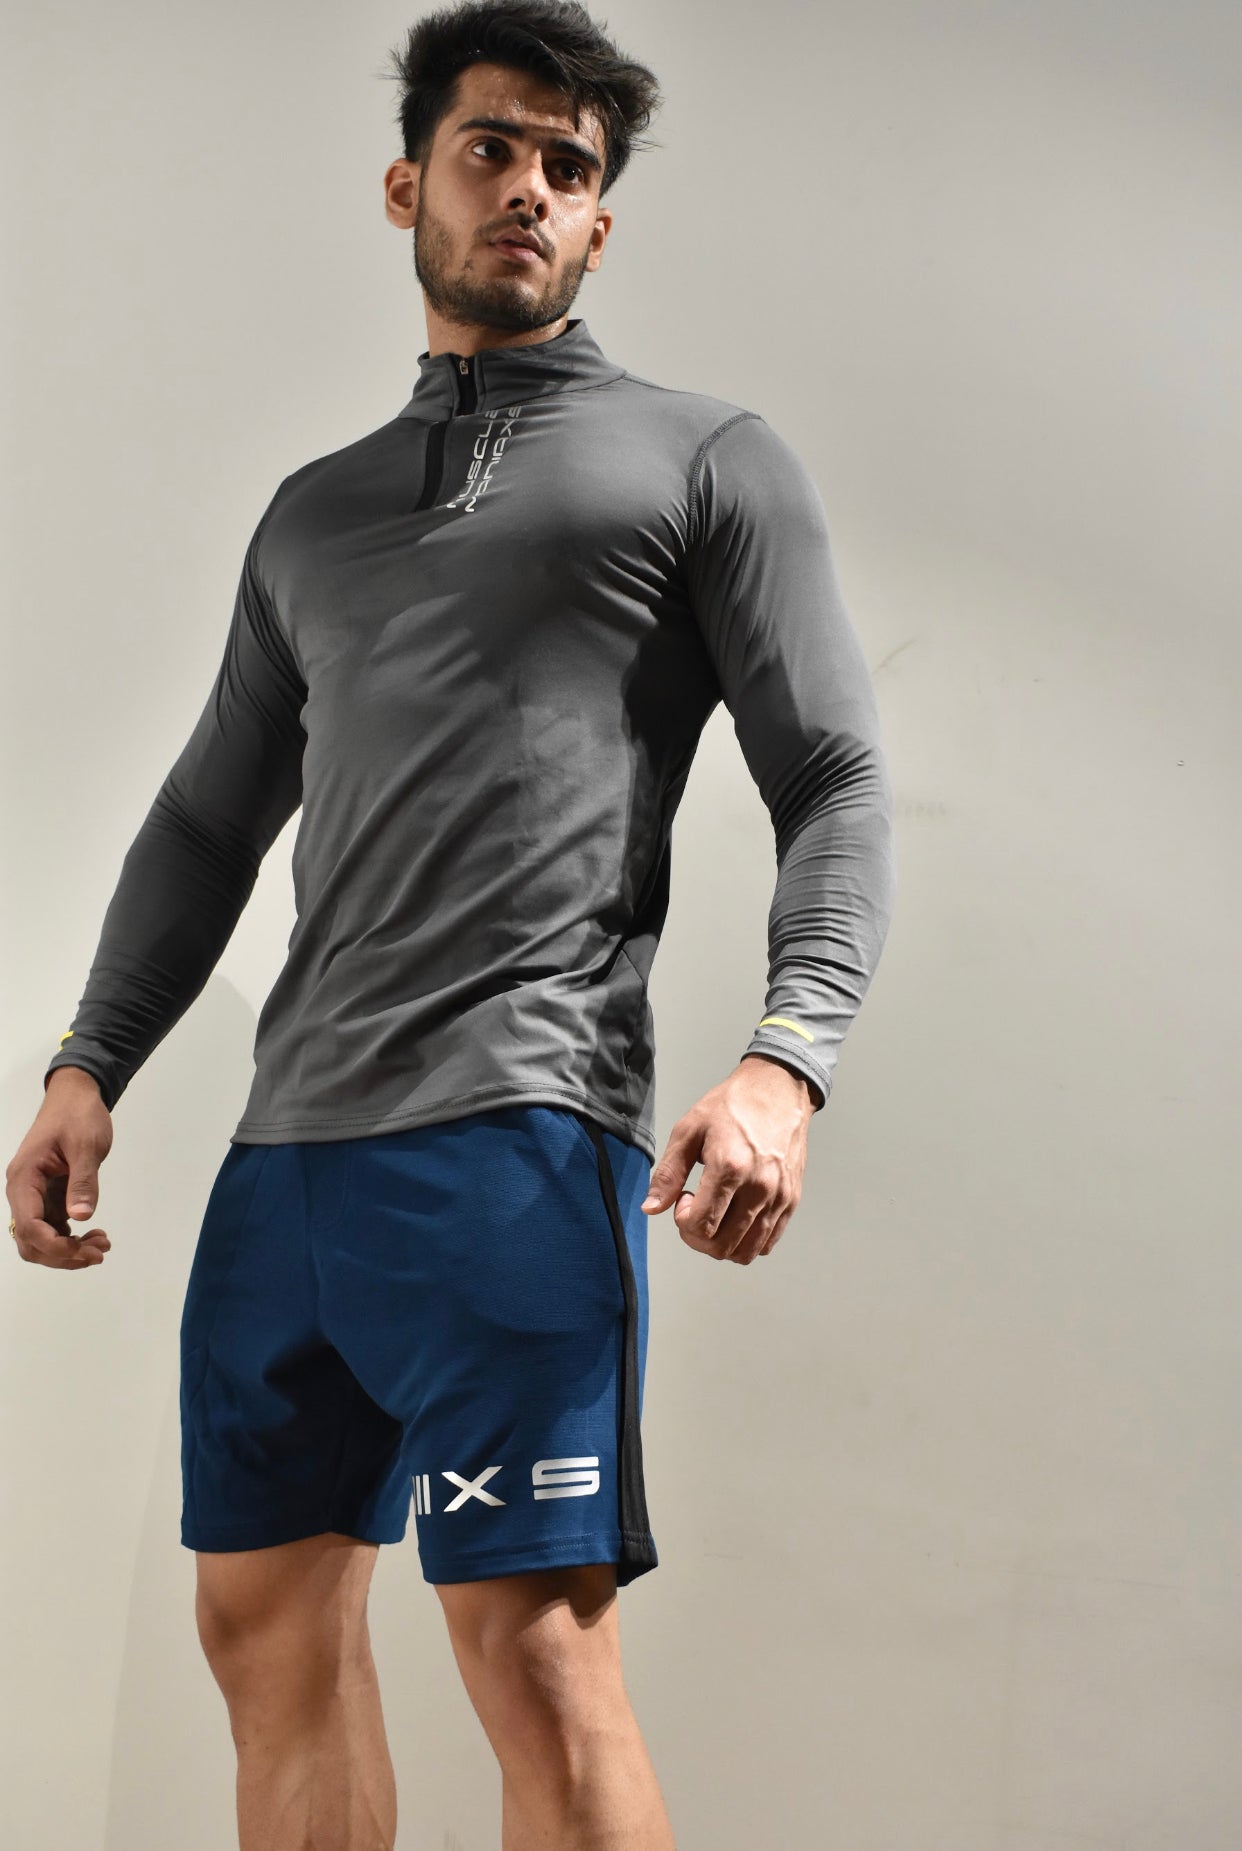 Men's Steel Grey  Dri- Tech  ½ Zip Long Sleeve Sweatshirt